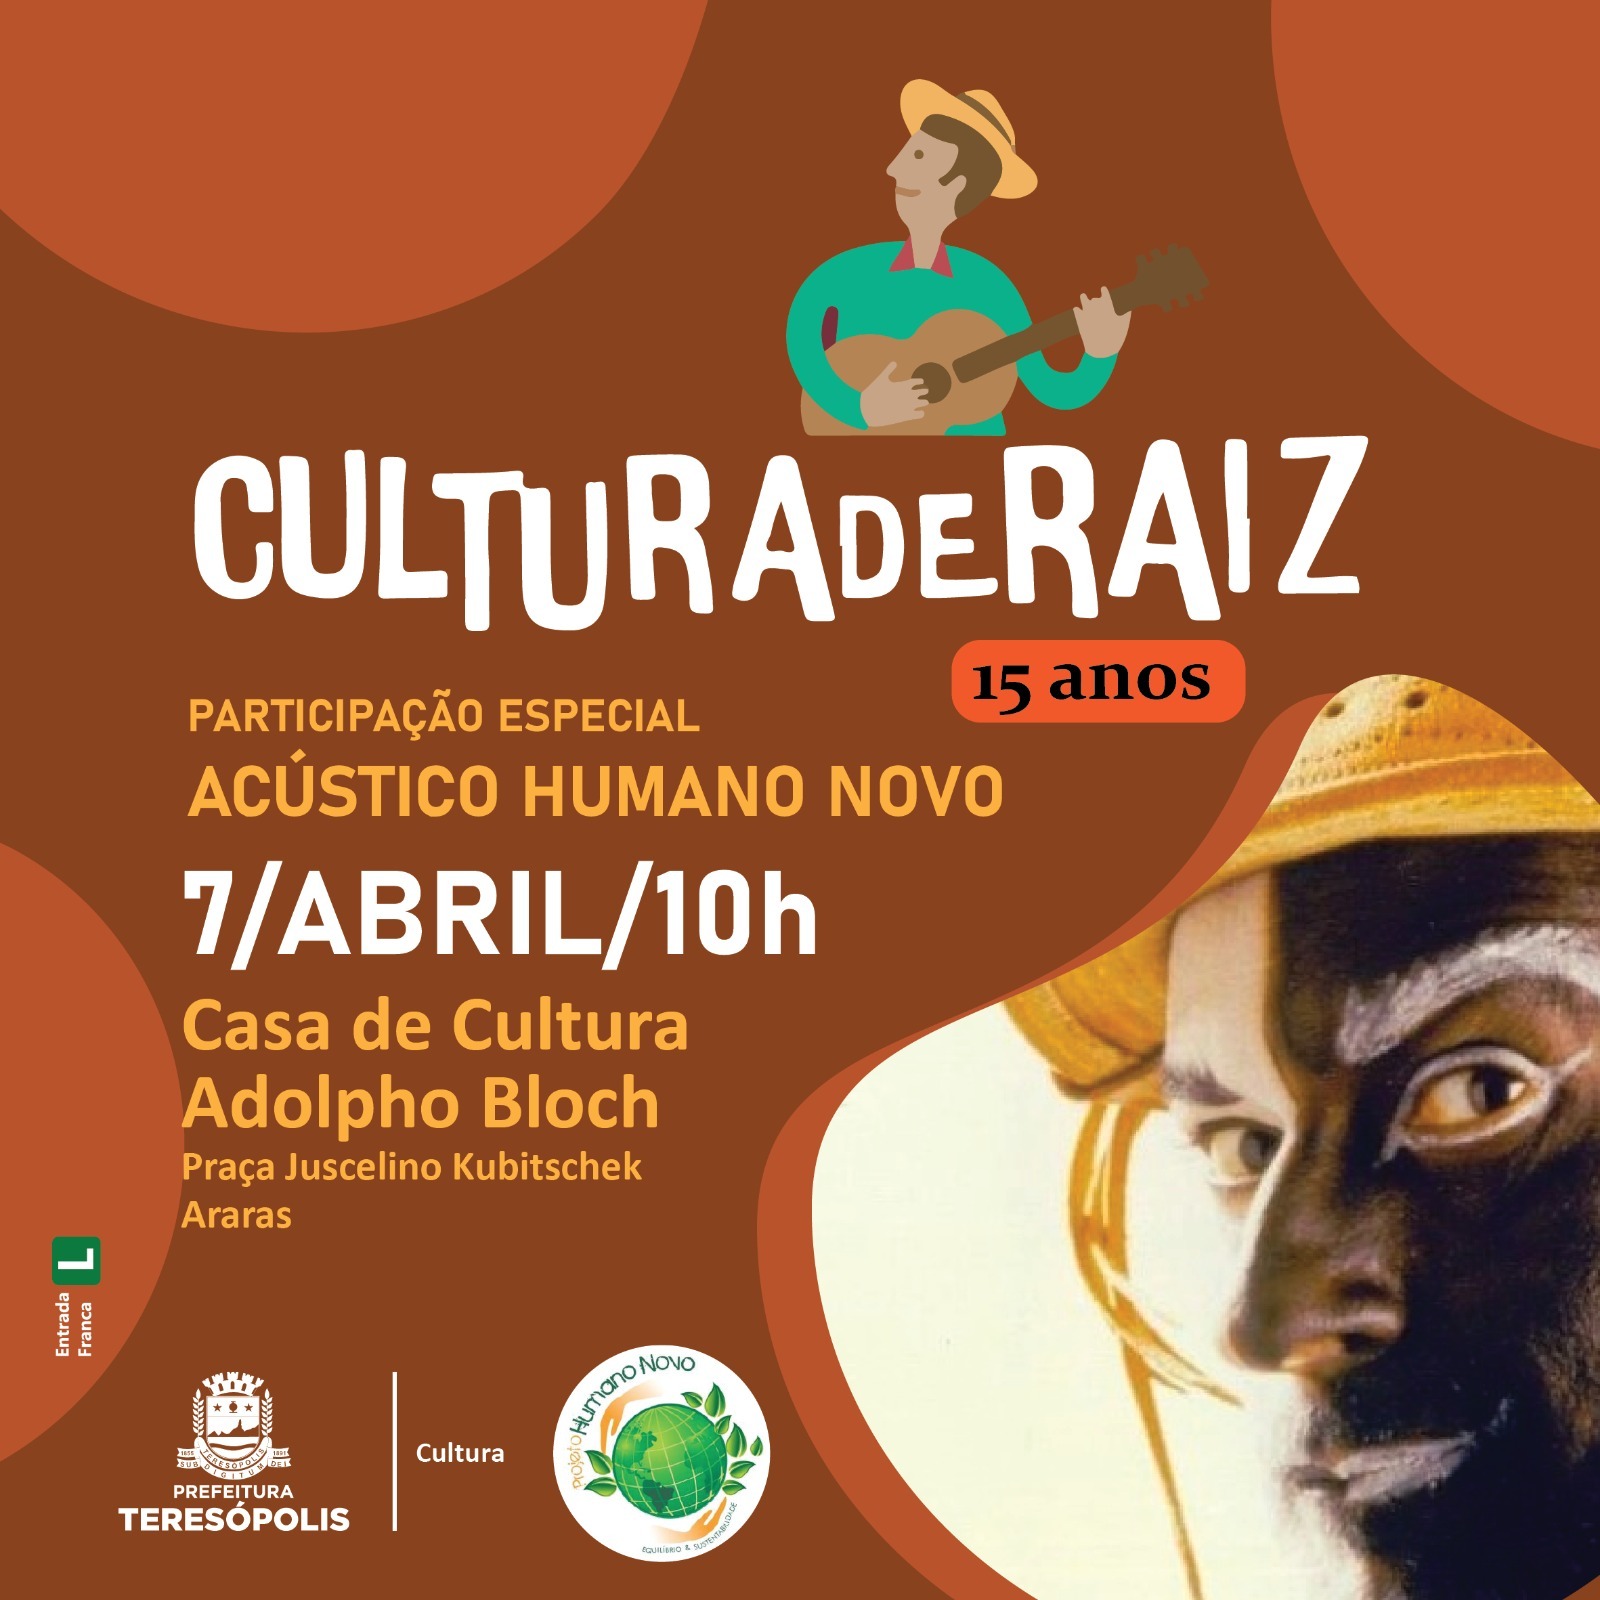 Domingo, 7 de abril, é dia de 'Cultura de Raiz', na Casa de Cultura, e de 'de Música na Matriz', na Igreja de Santa Teresa